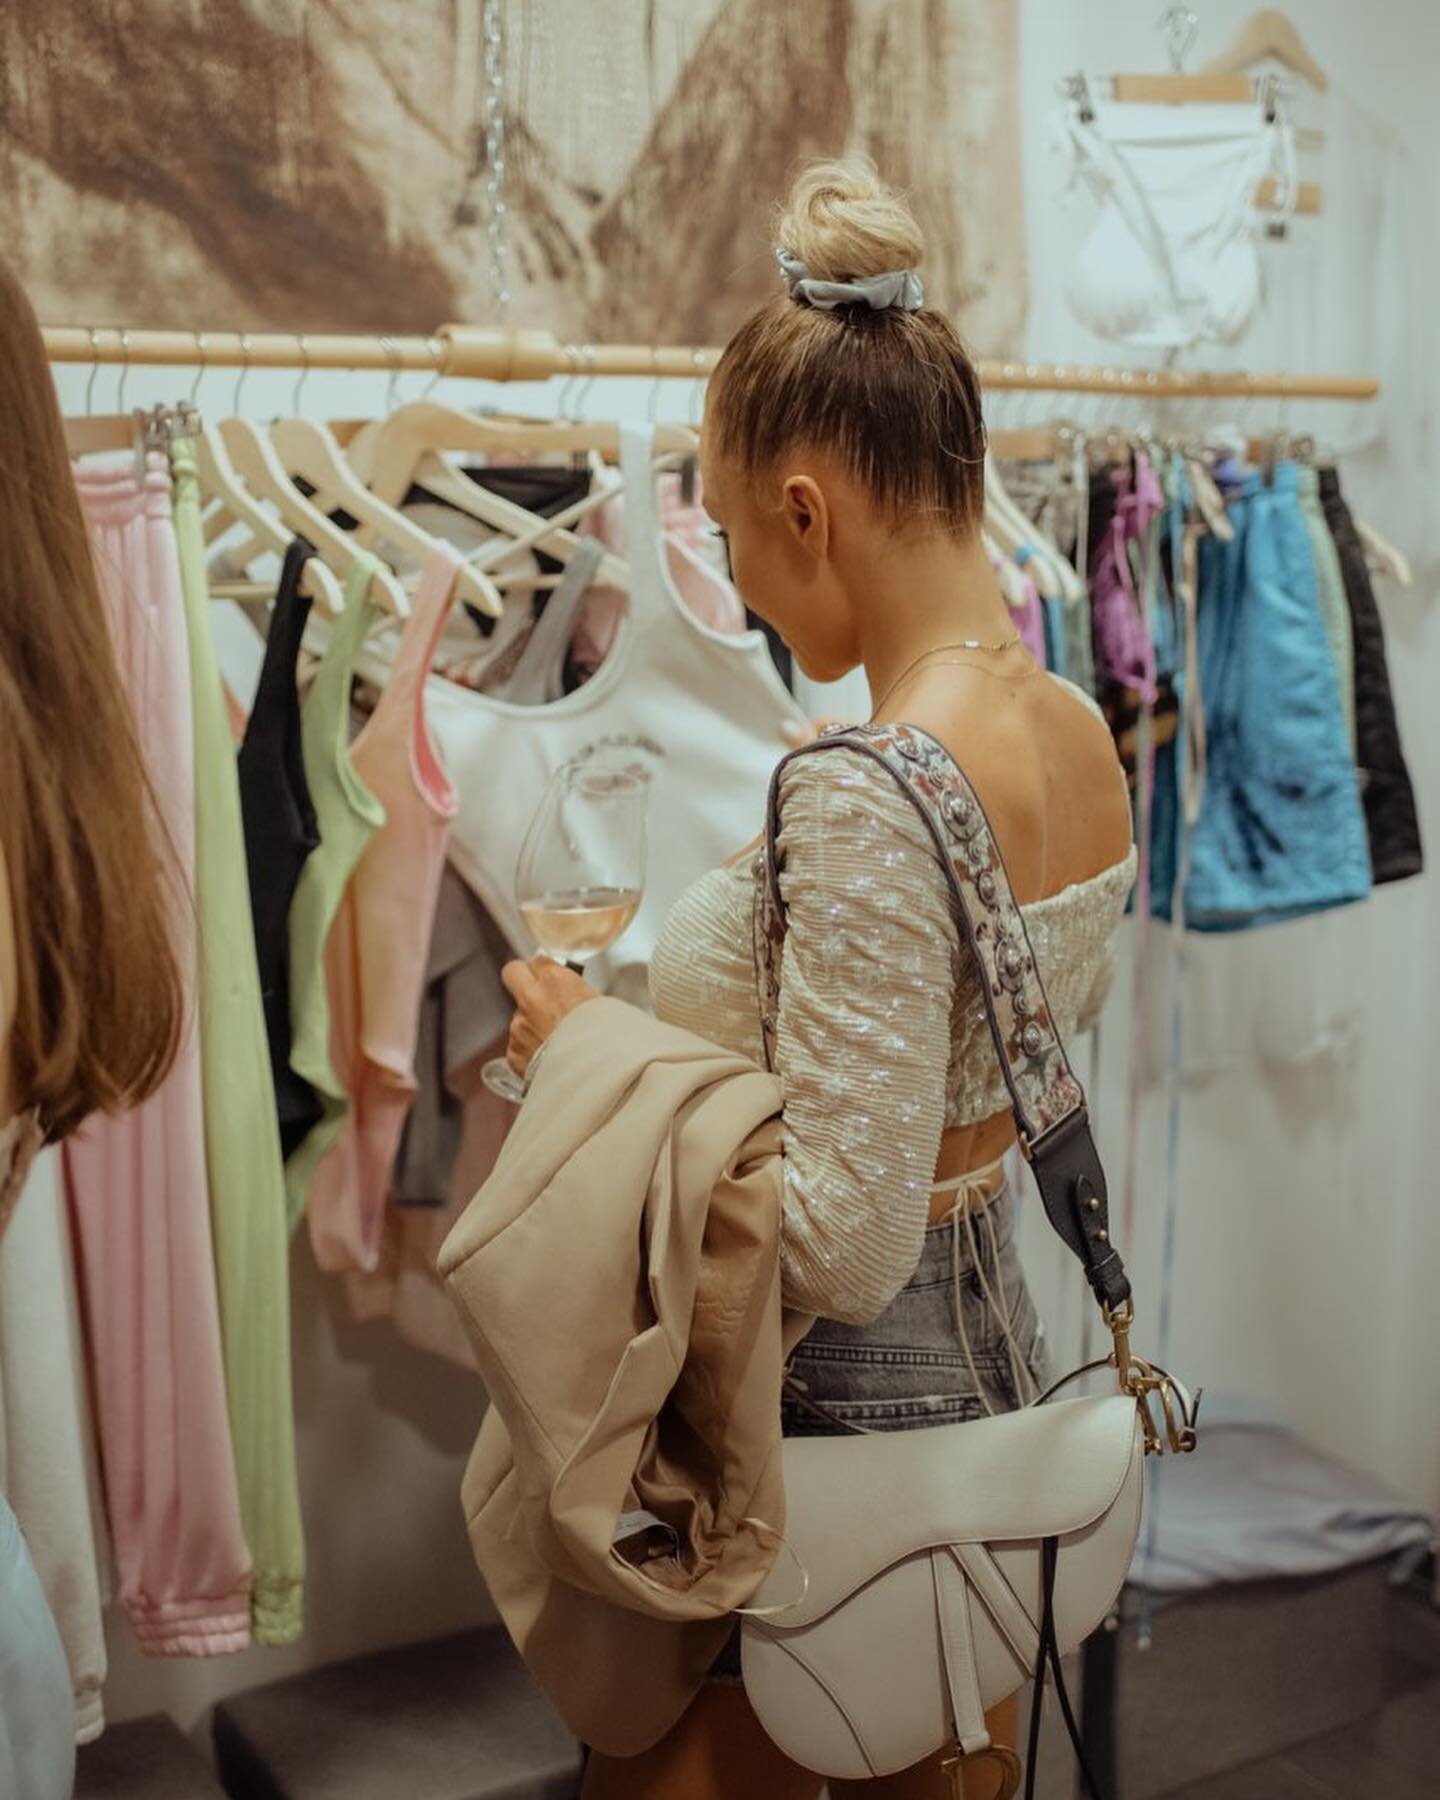 До края на уикенда ще имате възможност да се потопите във феерията на летния магазин на @i.s.k.r.a х @teadore.p ✨

Снимките са от събитието Midnight Shopping, което организирахме за бутика. 
photos by: @angela.serop 
.
.
.
#shopping #fashion #fashion